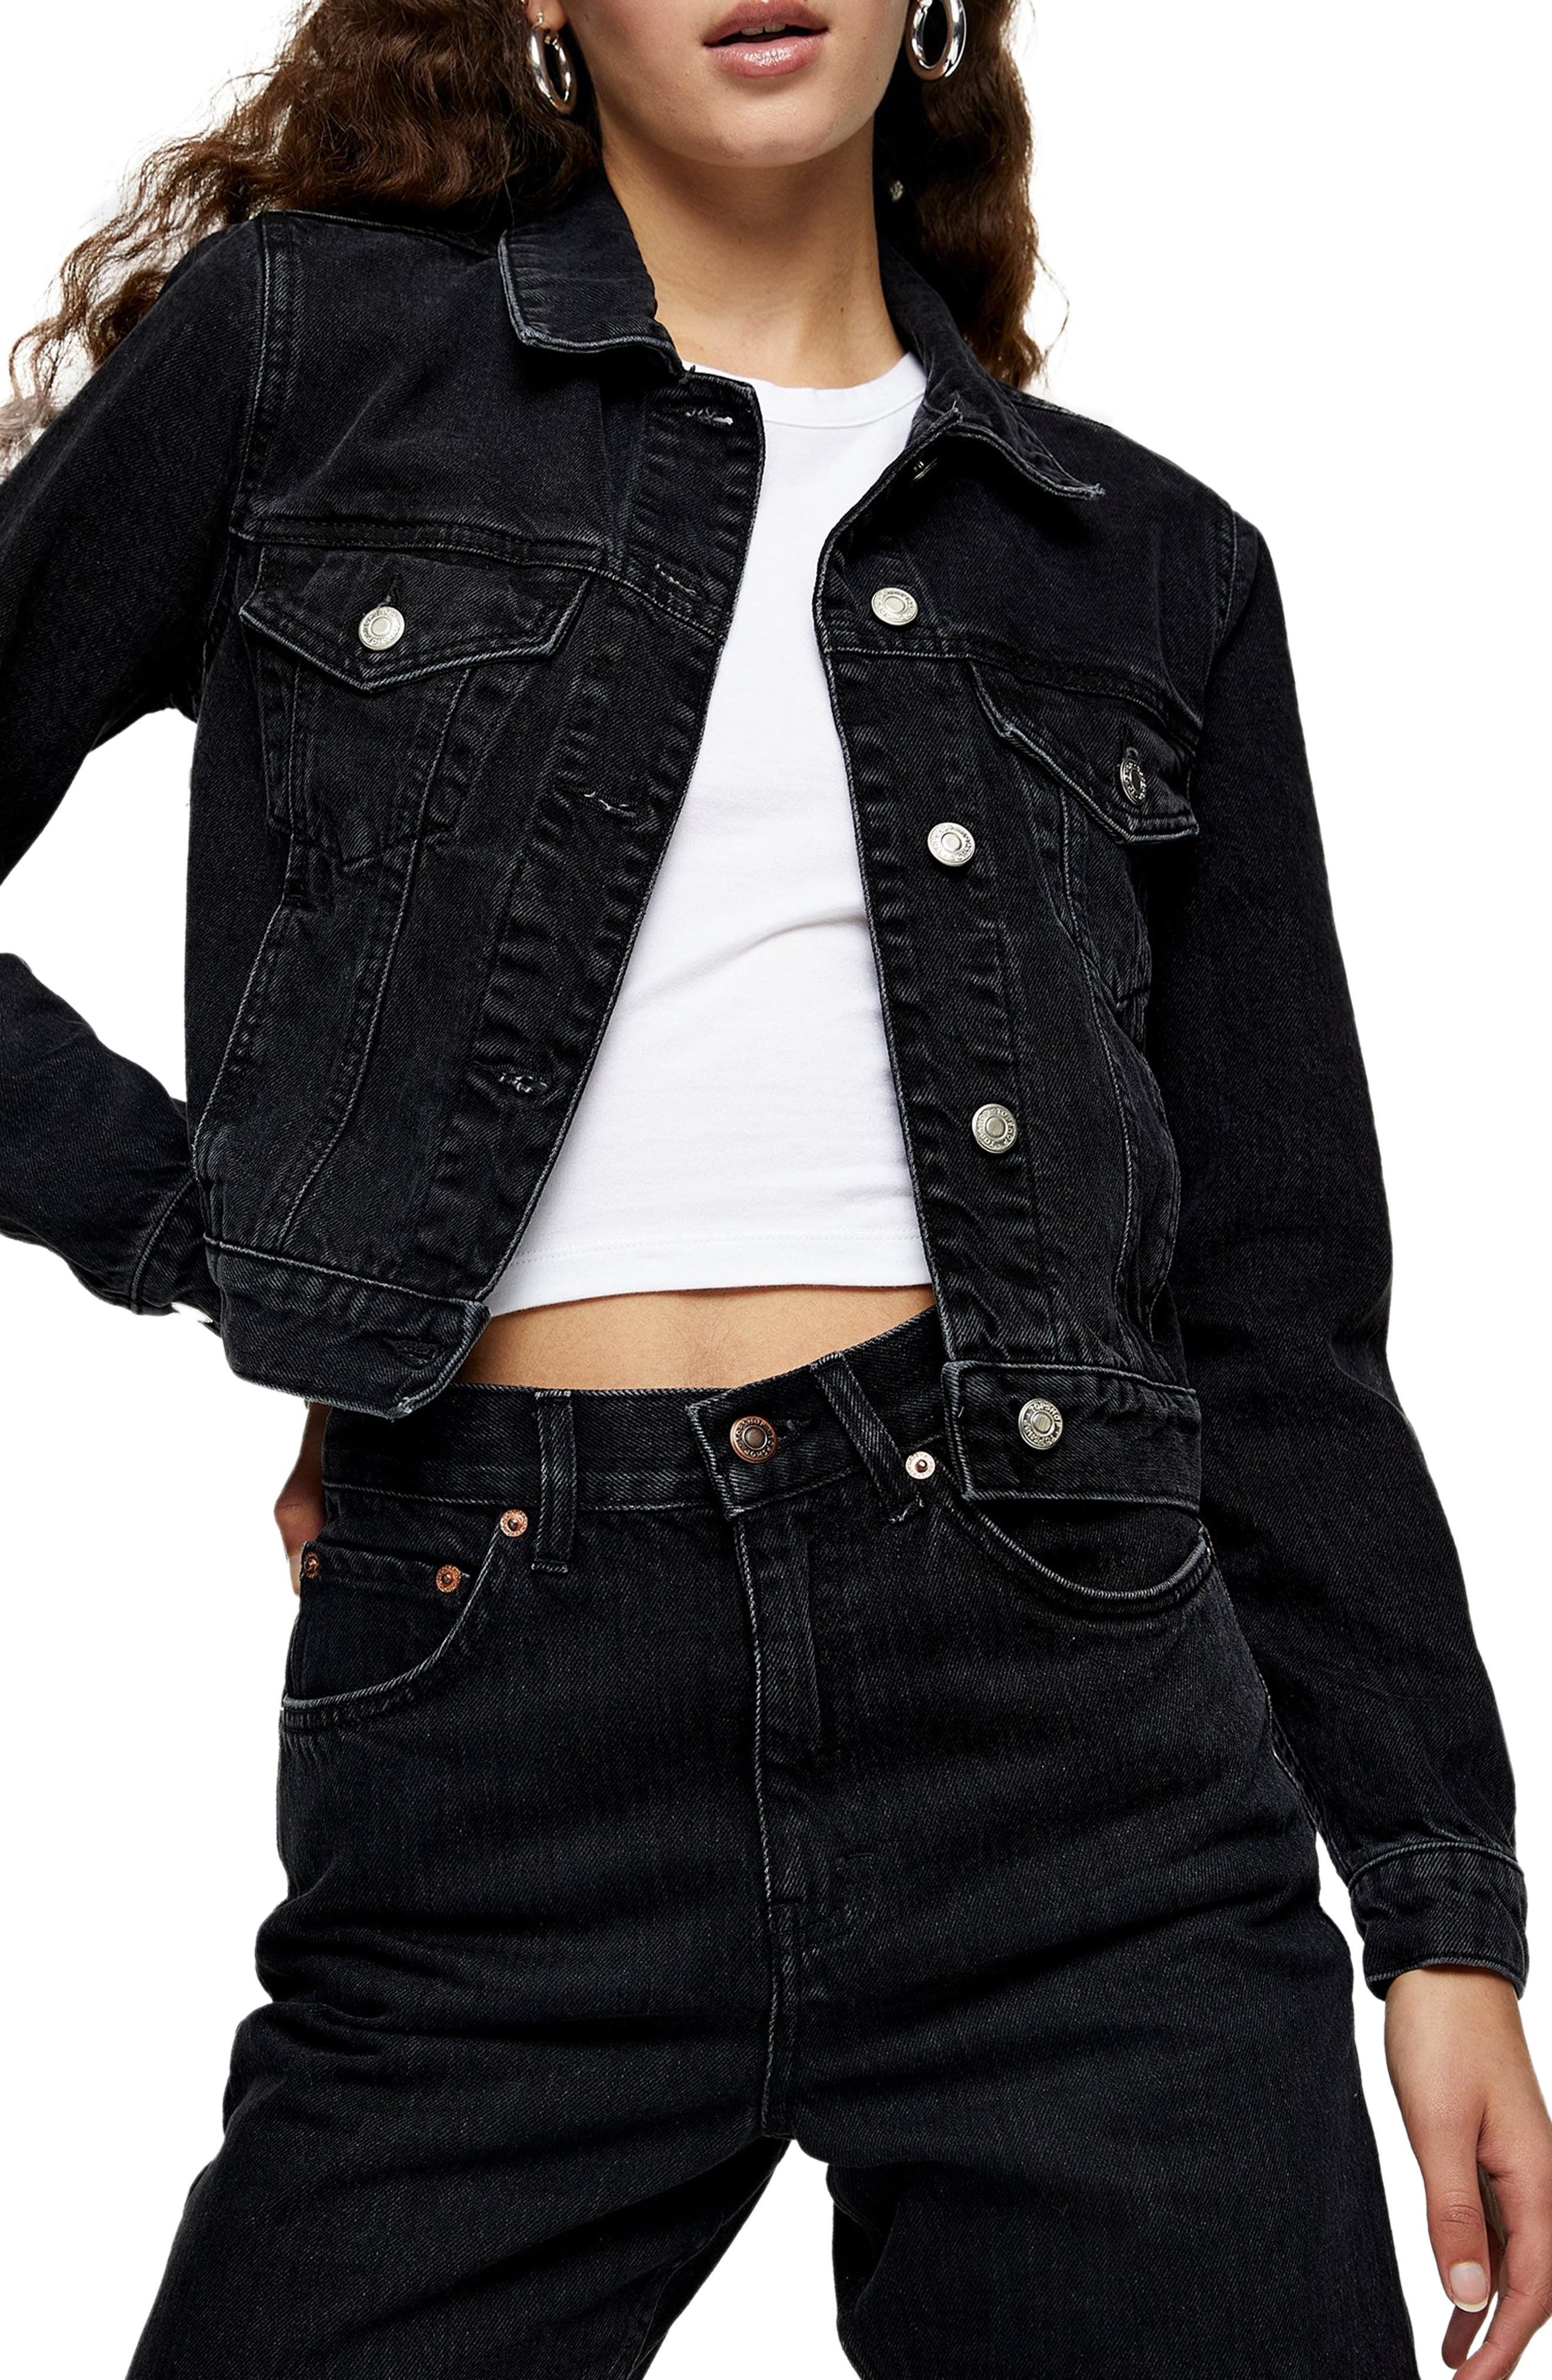 NEW DENIM JACKET Women Jeans Waist Stretch Jackets Black White Size 8 10 12 14 